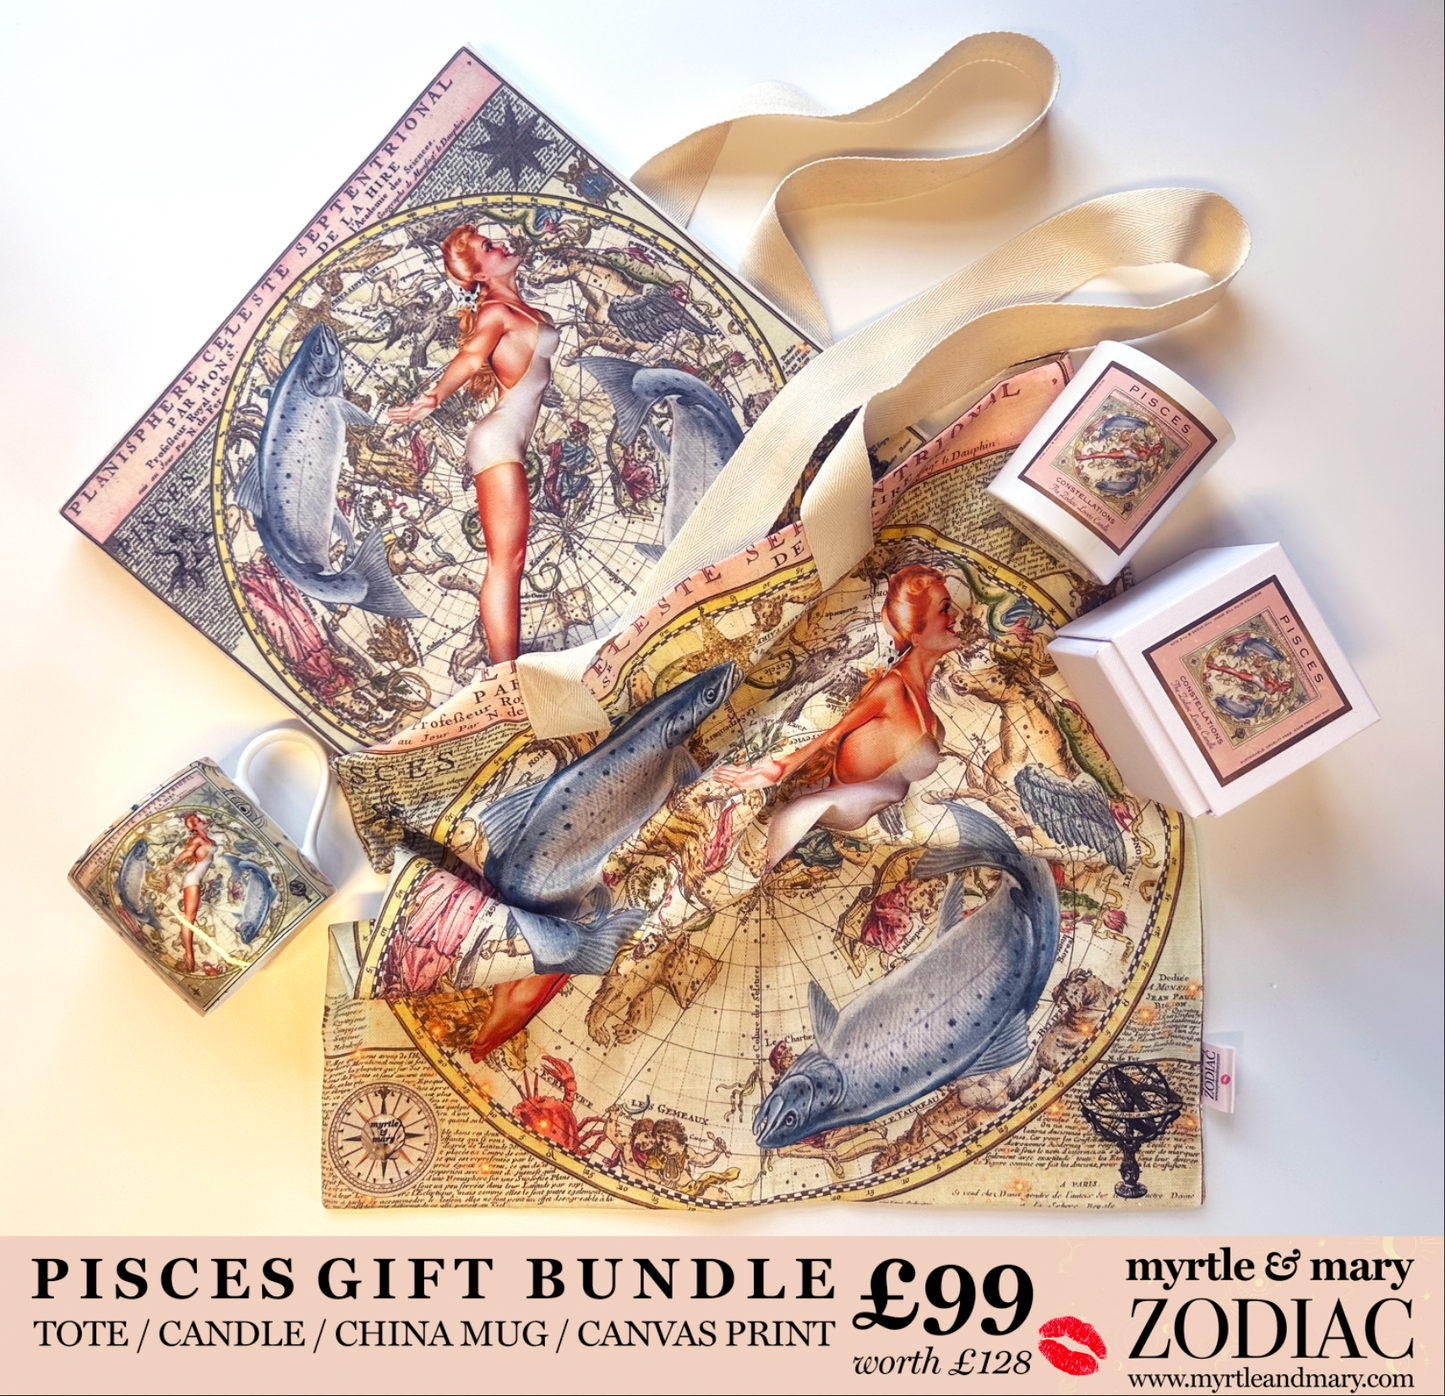 Zodiac Gift Bundle